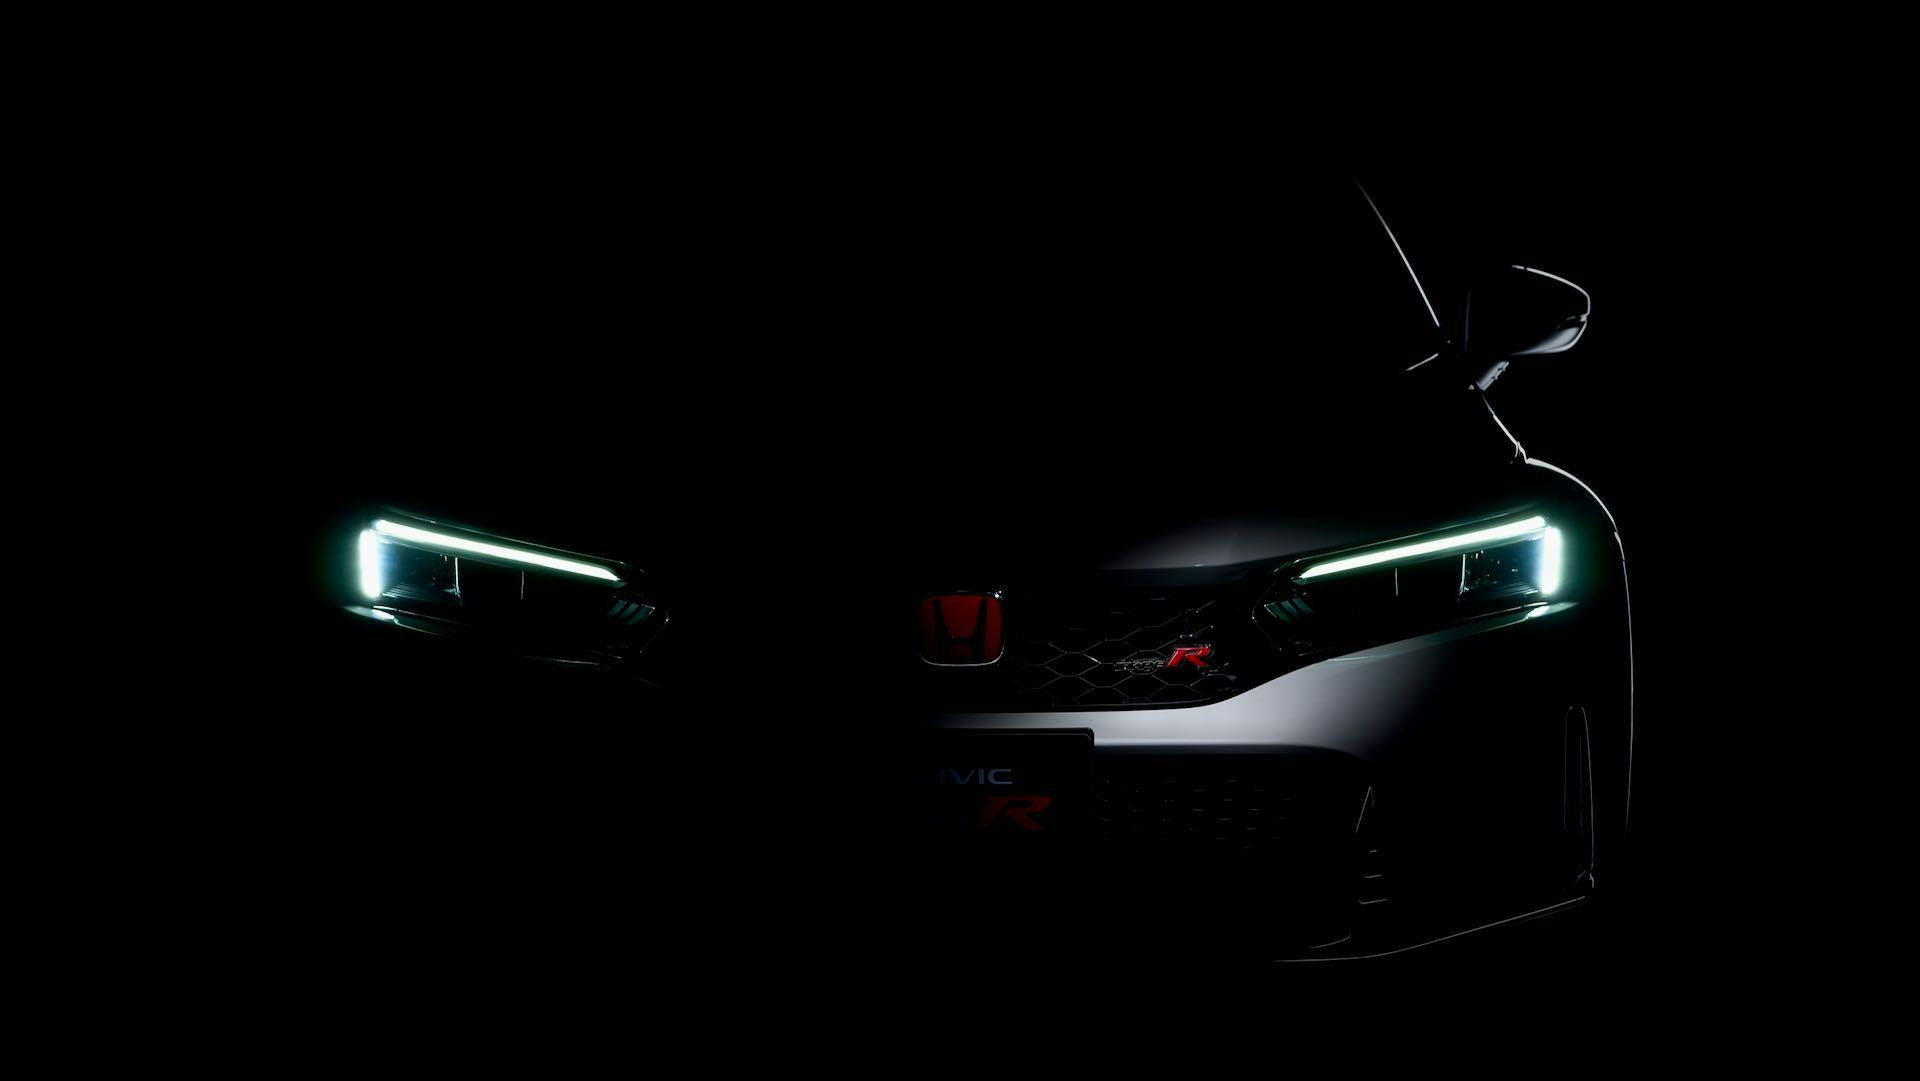 Honda Civic Type R unveil date, 21 luglio 2022